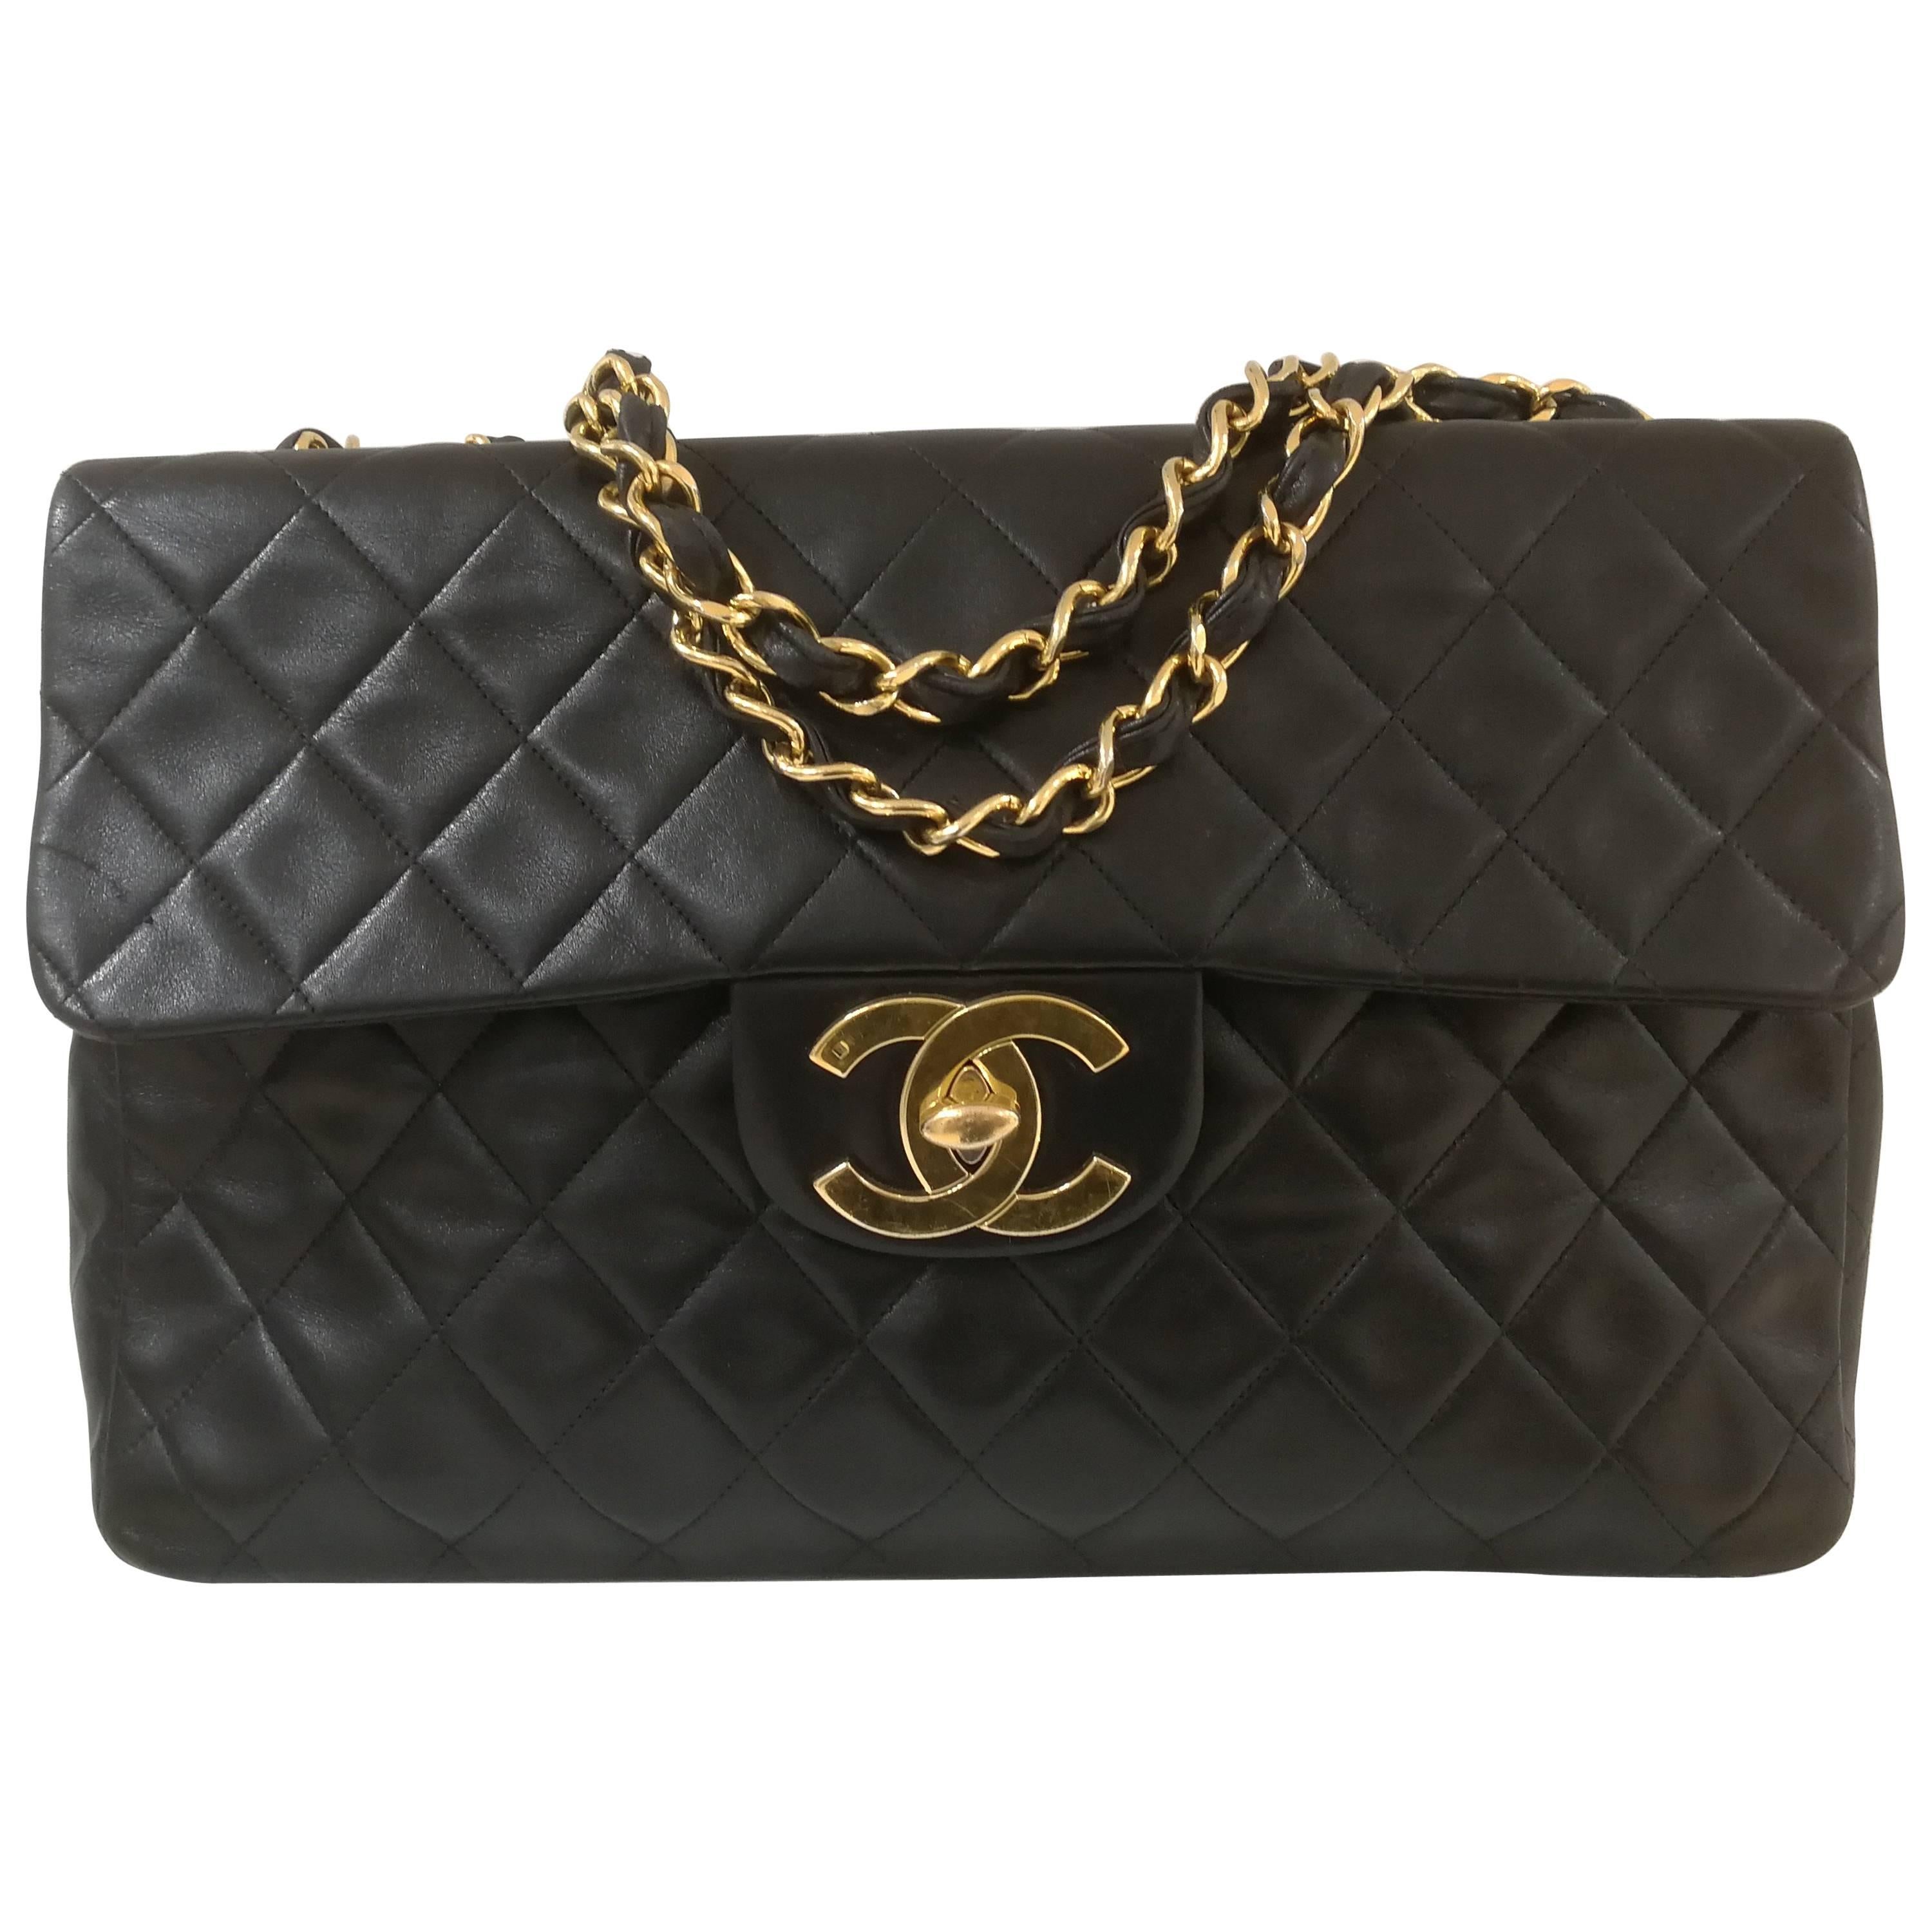 Chanel Black leather gold hardware maxi jumbo shoulder bag